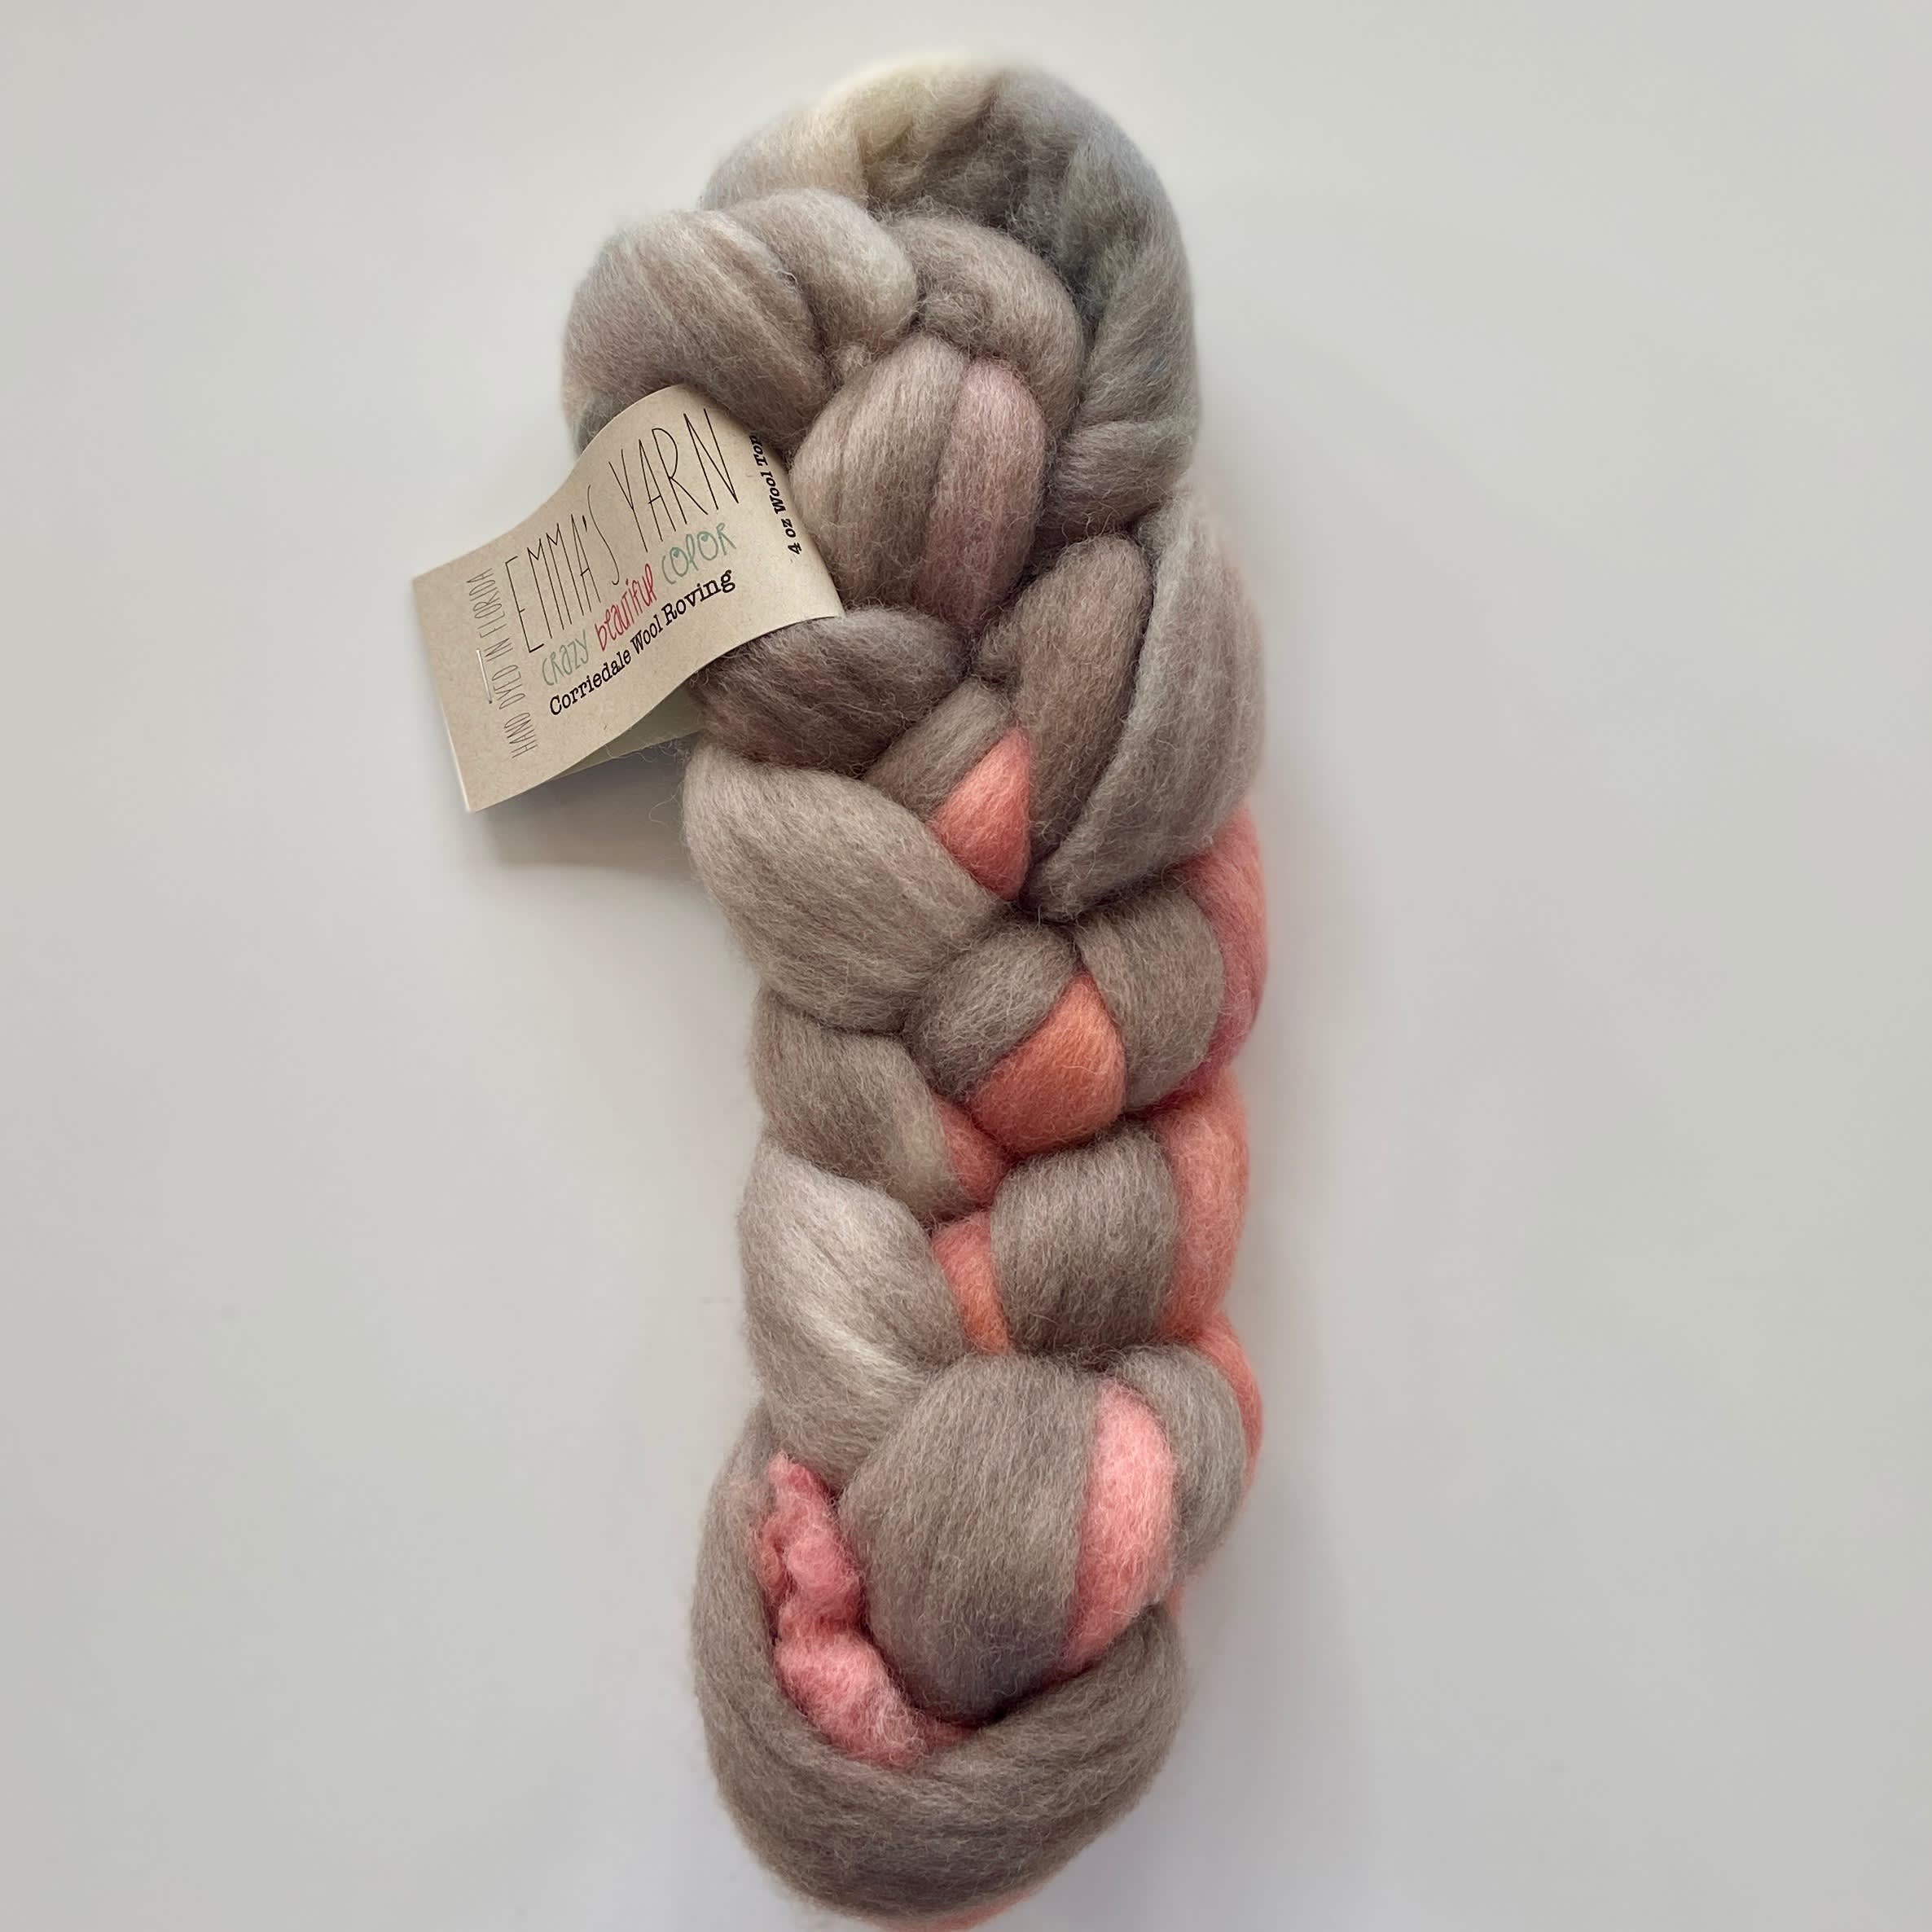 Emma's Yarn Corriedale Wool Roving - Four Purls Yarn Shop